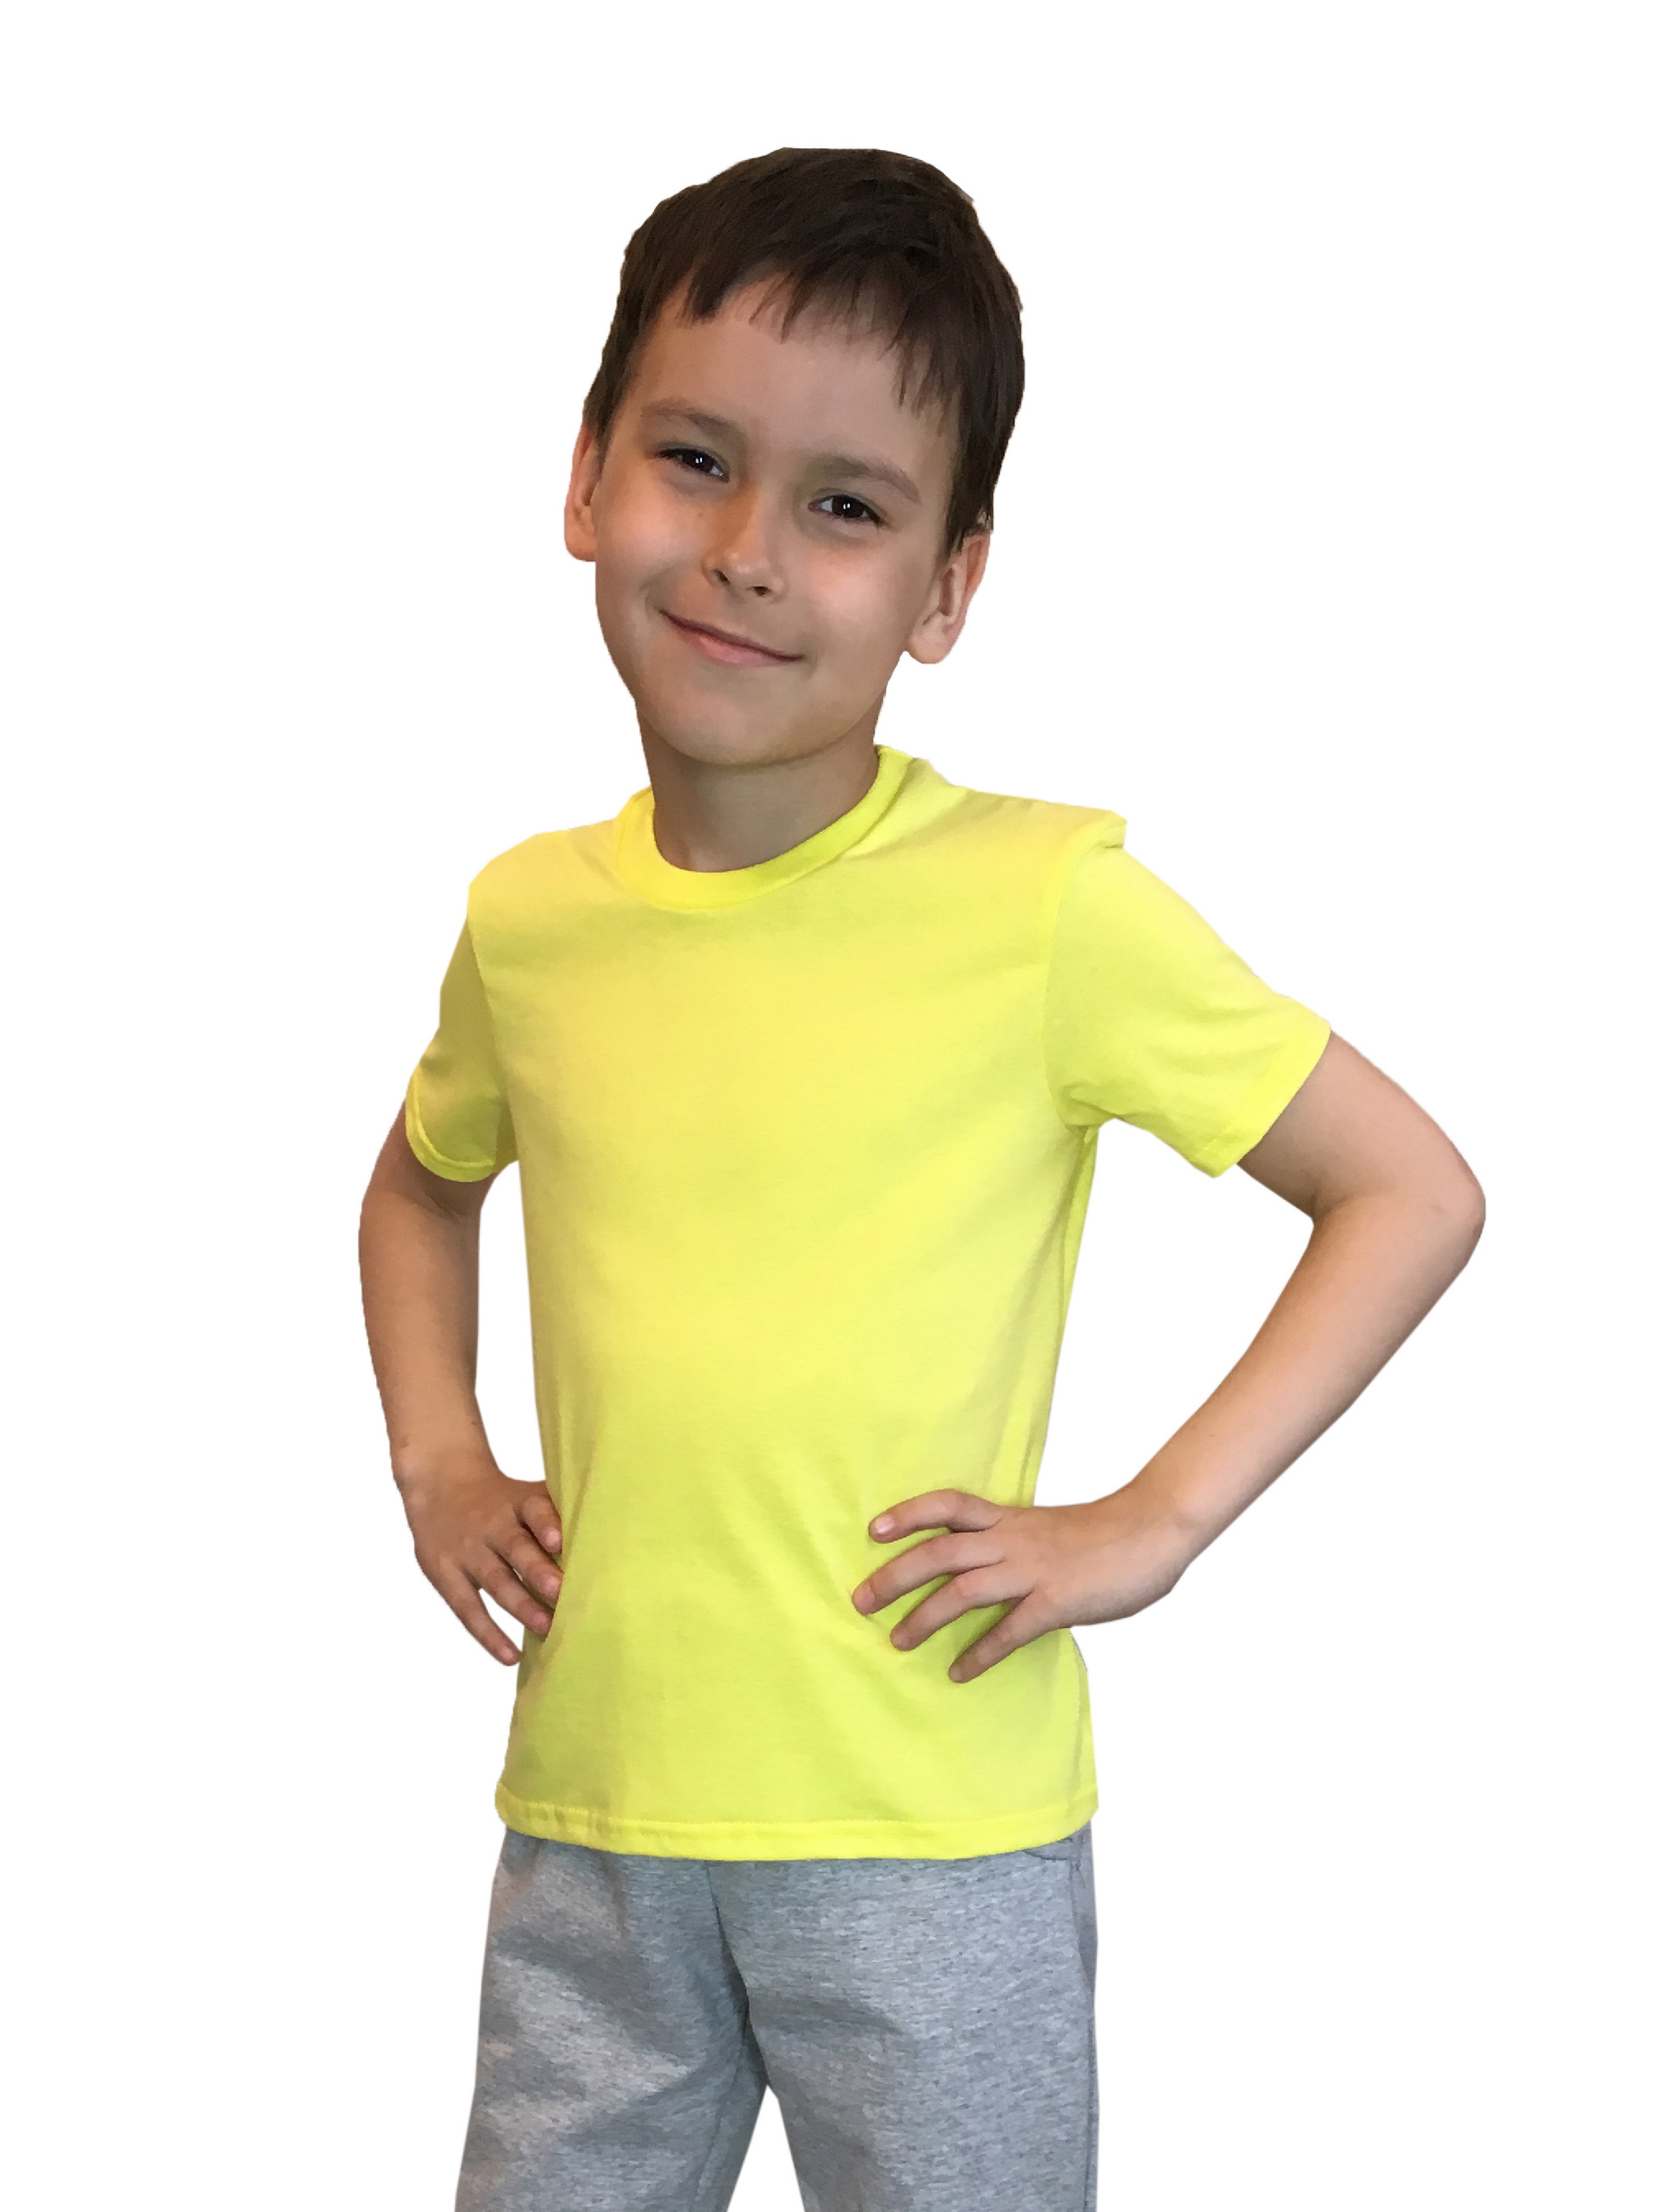 Футболка детская Детрик, желтая размер 104, Ф-1-53